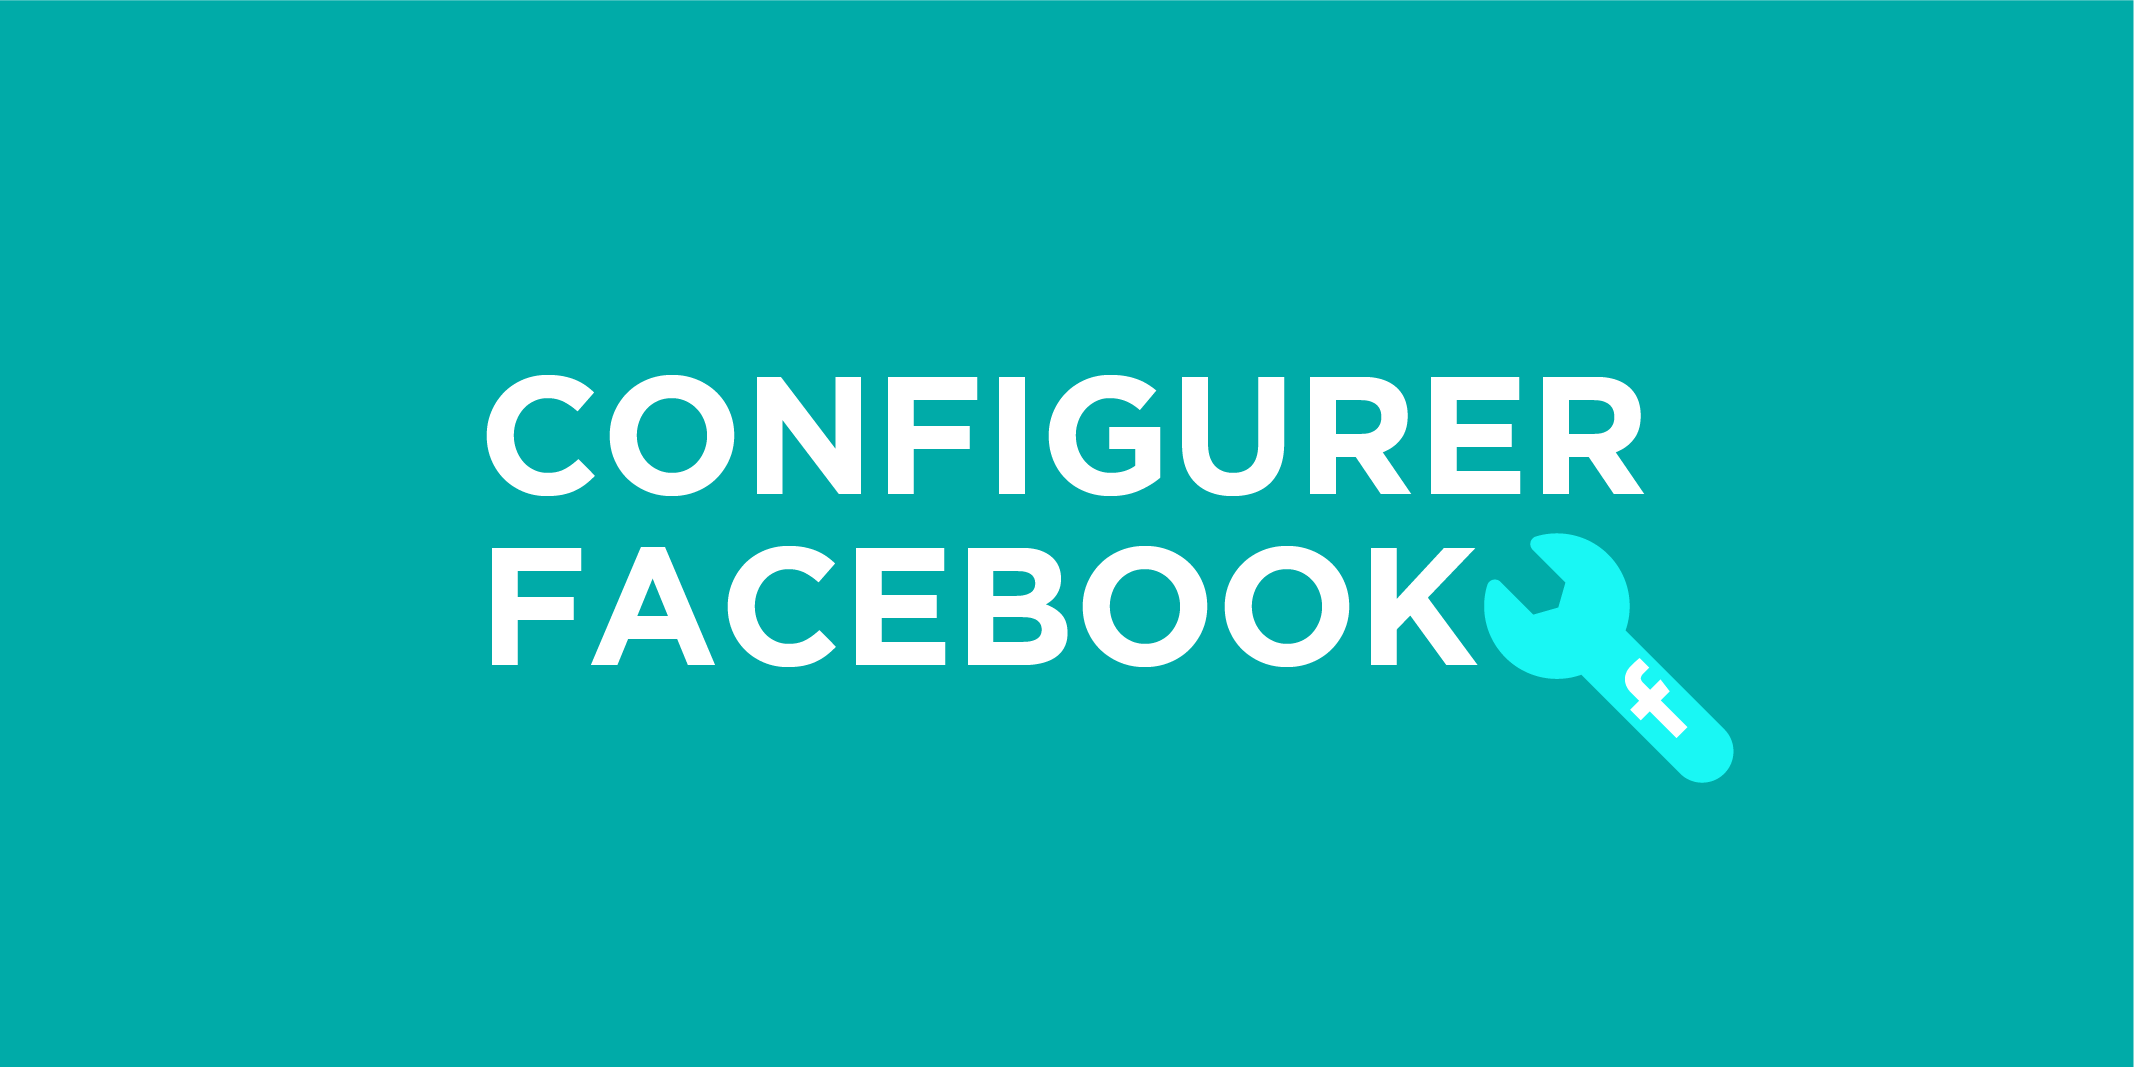 Configurer sa page Facebook n'a rien de compliqué !